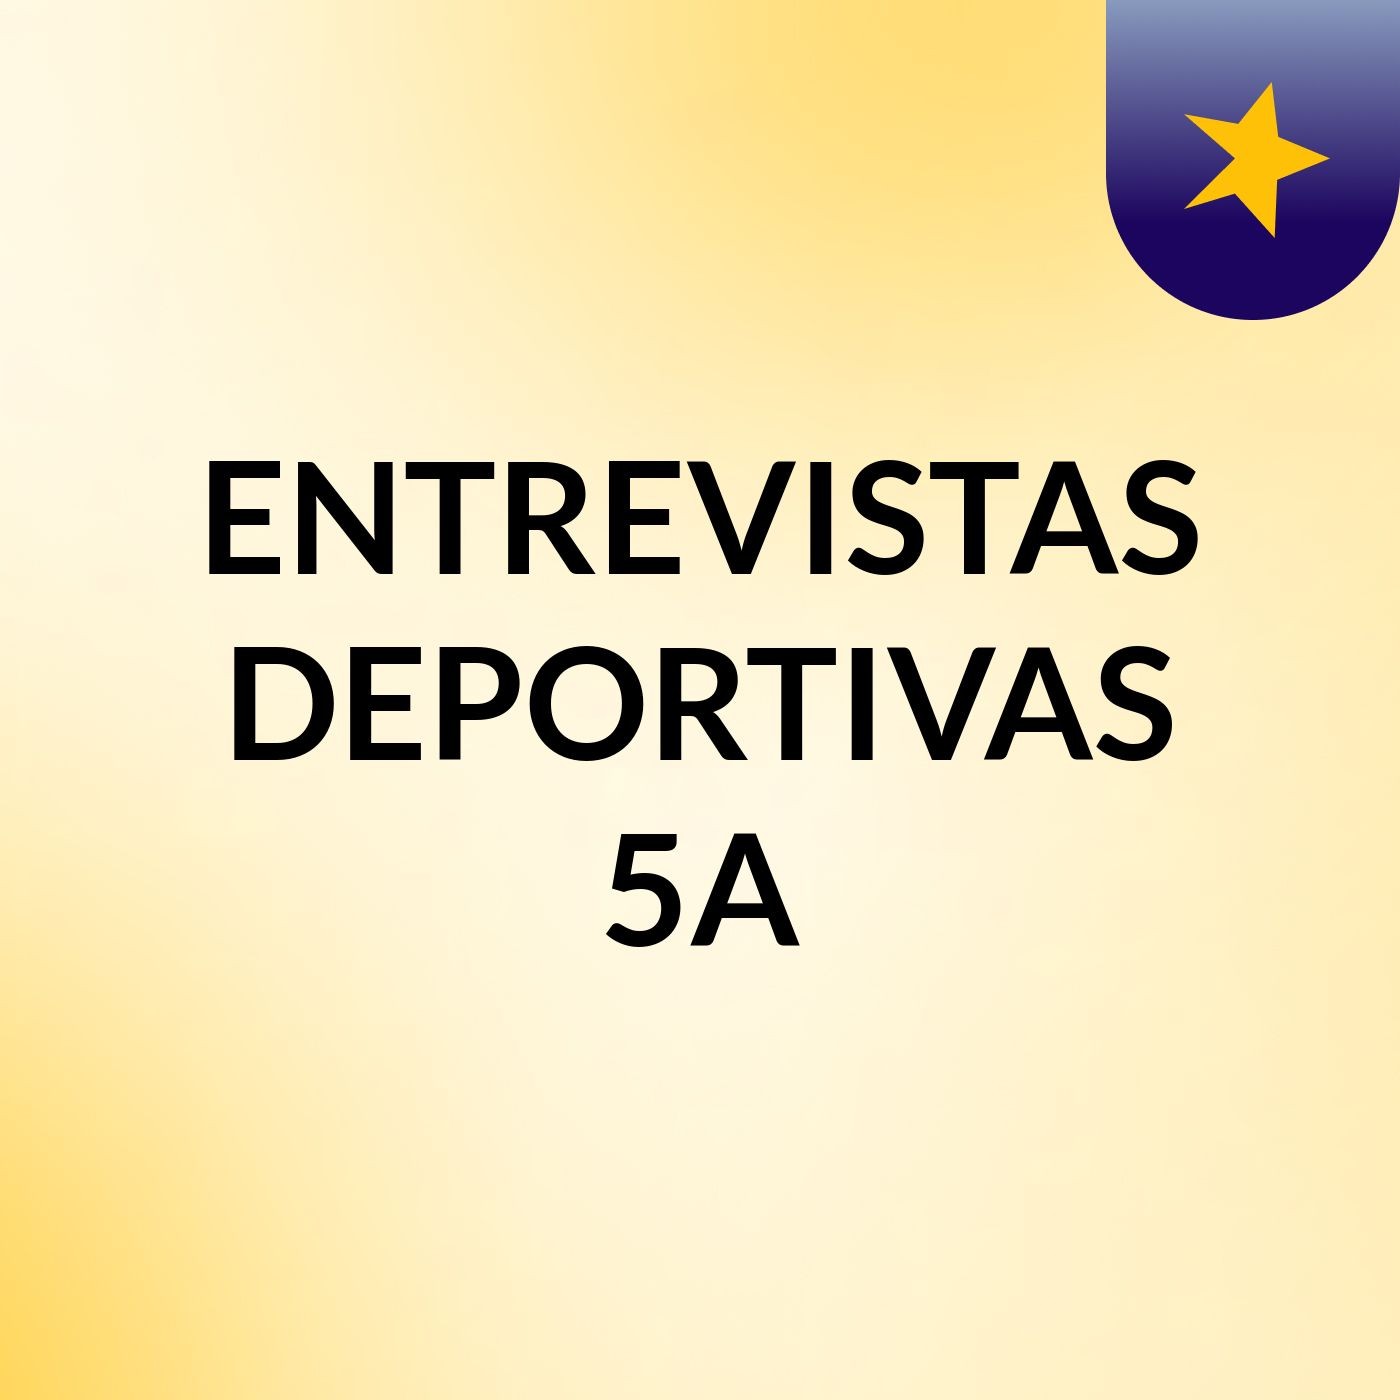 ENTREVISTAS DEPORTIVAS 5A